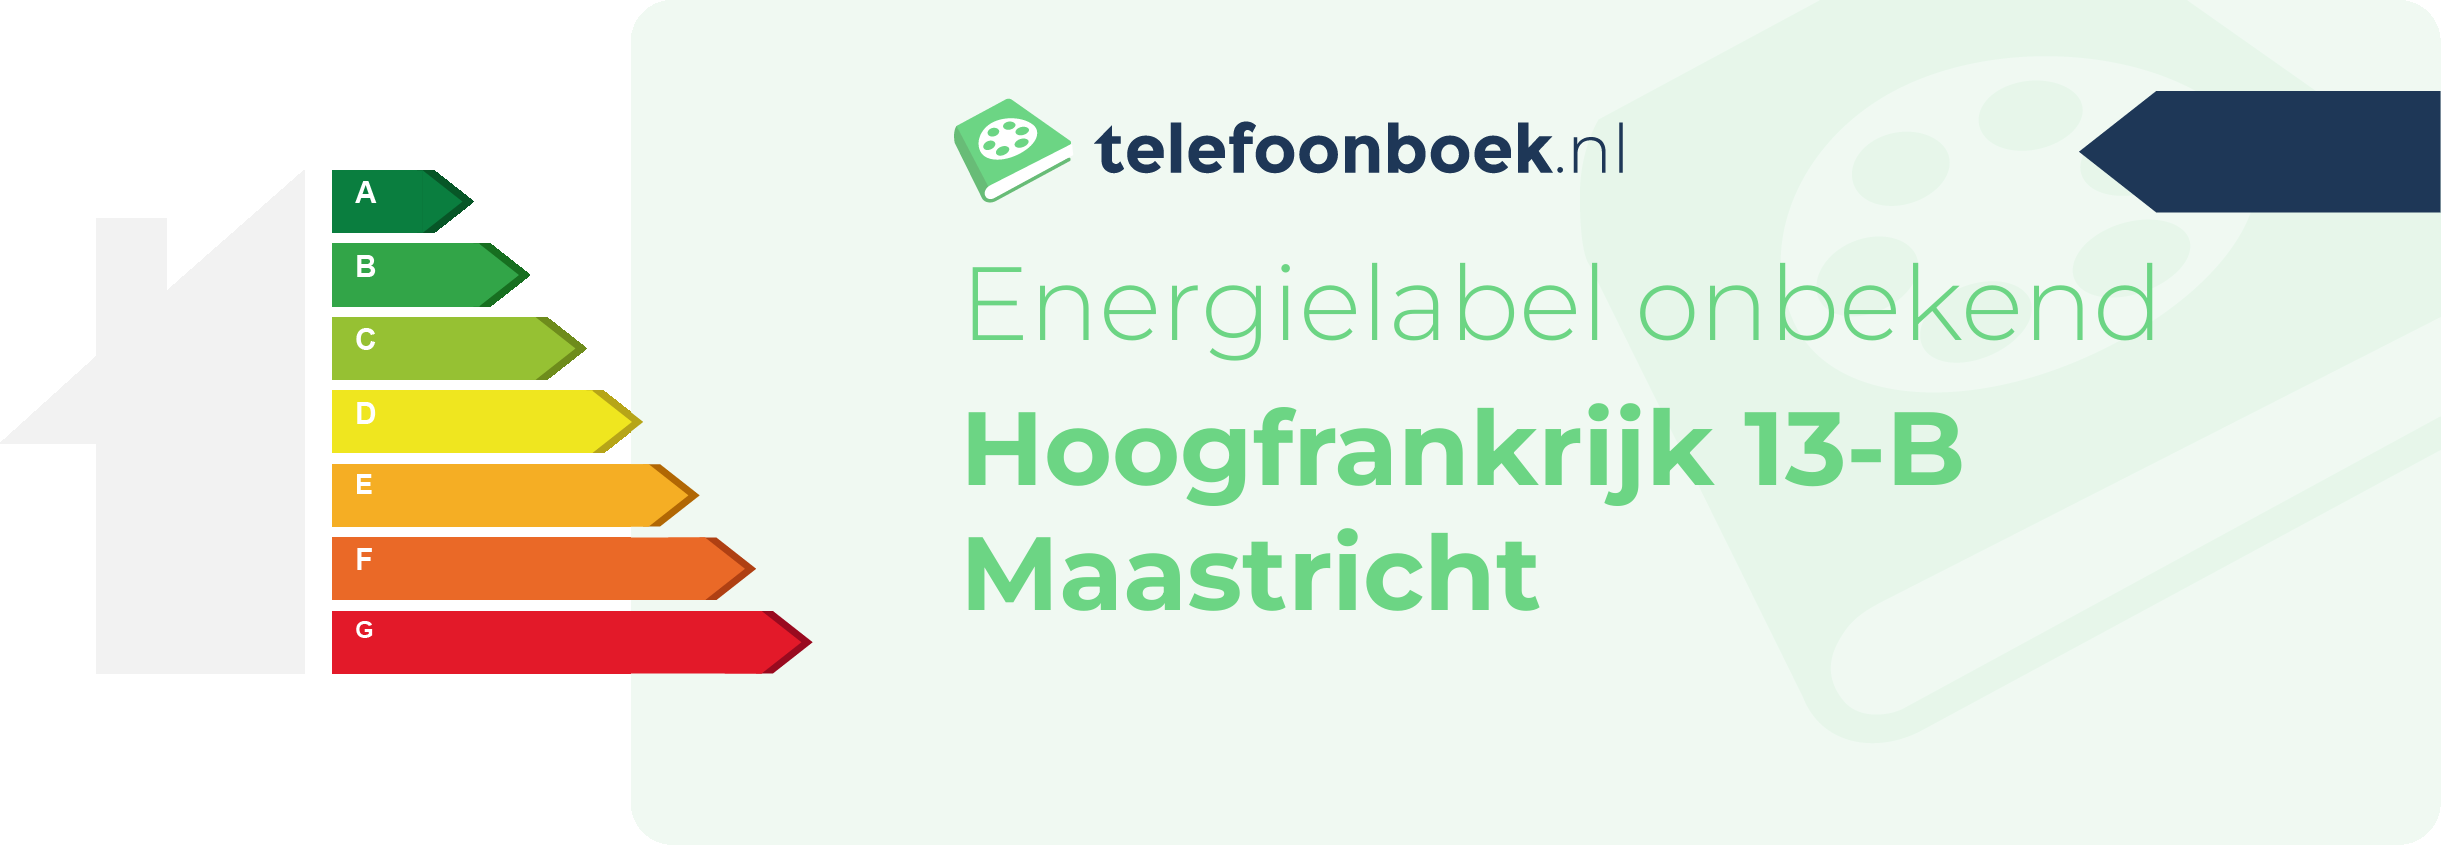 Energielabel Hoogfrankrijk 13-B Maastricht